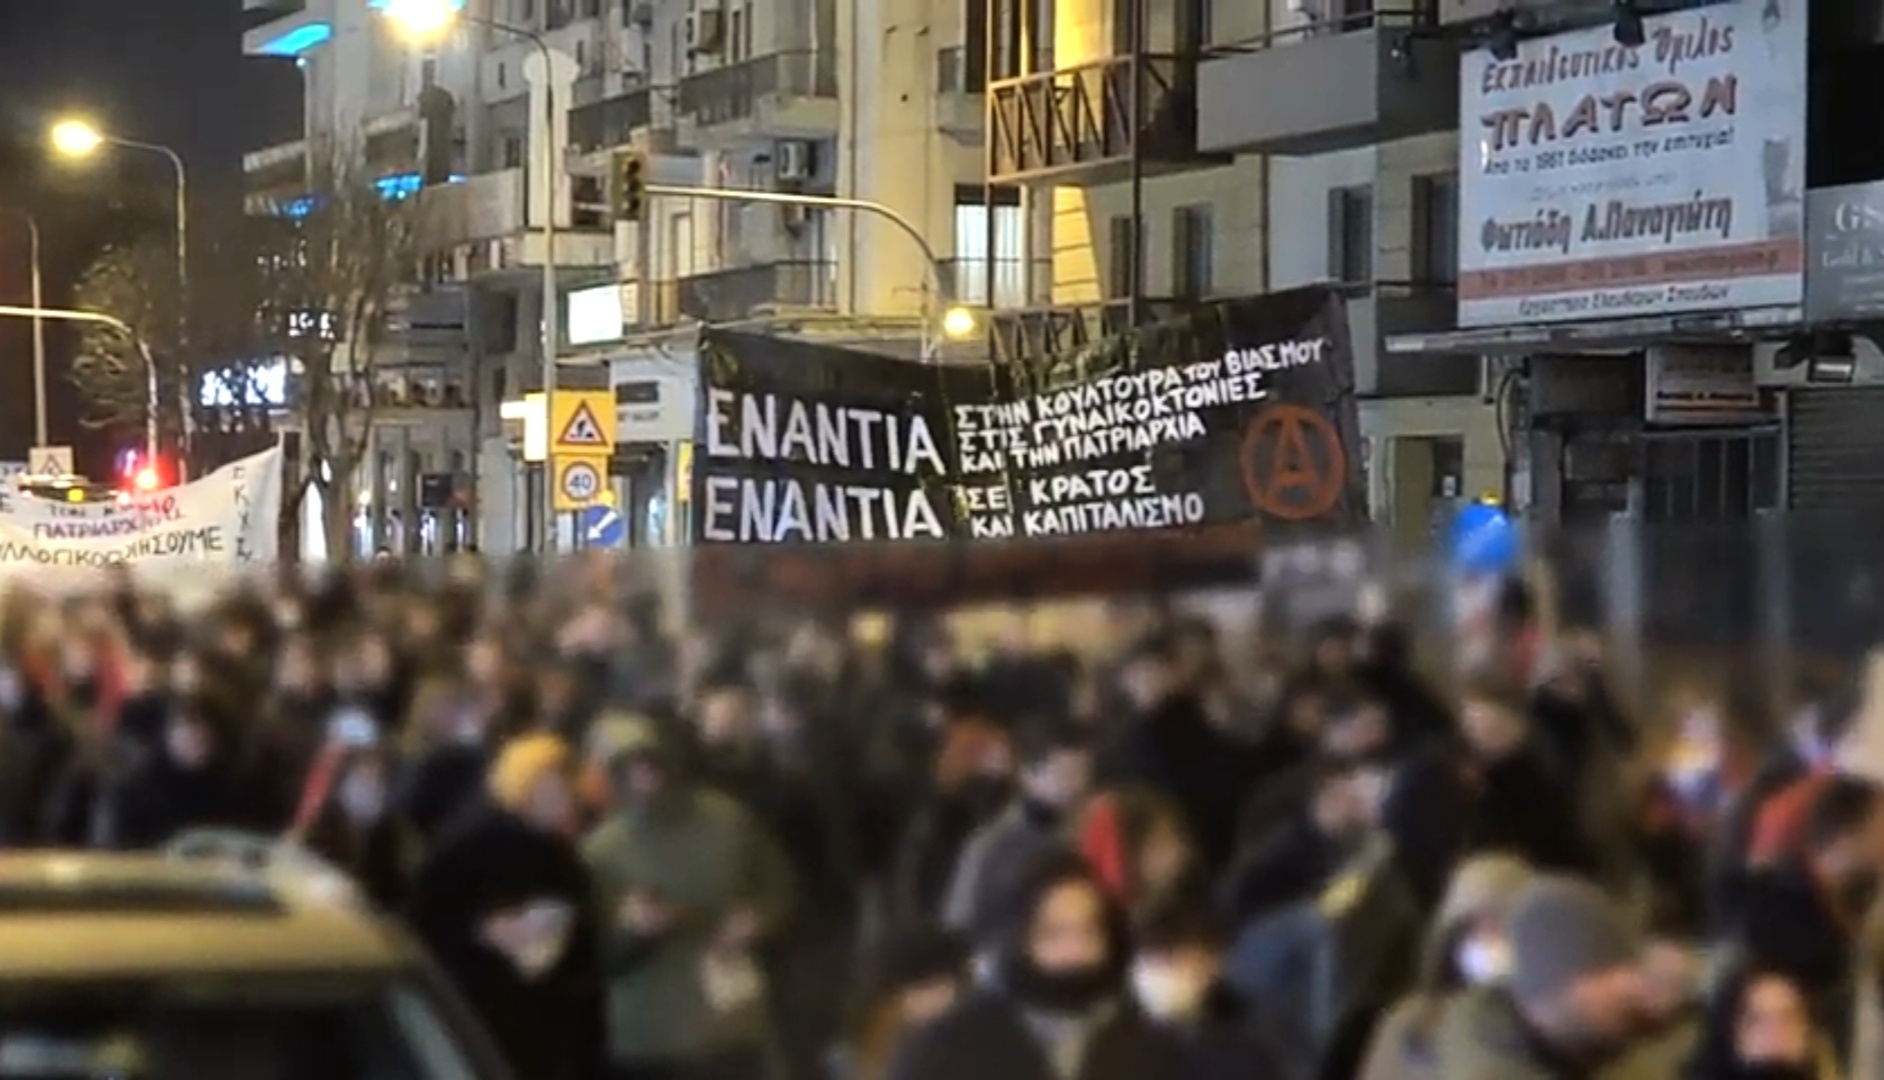 Θεσσαλονίκη | Video από την πορεία της 8ης Μάρτη